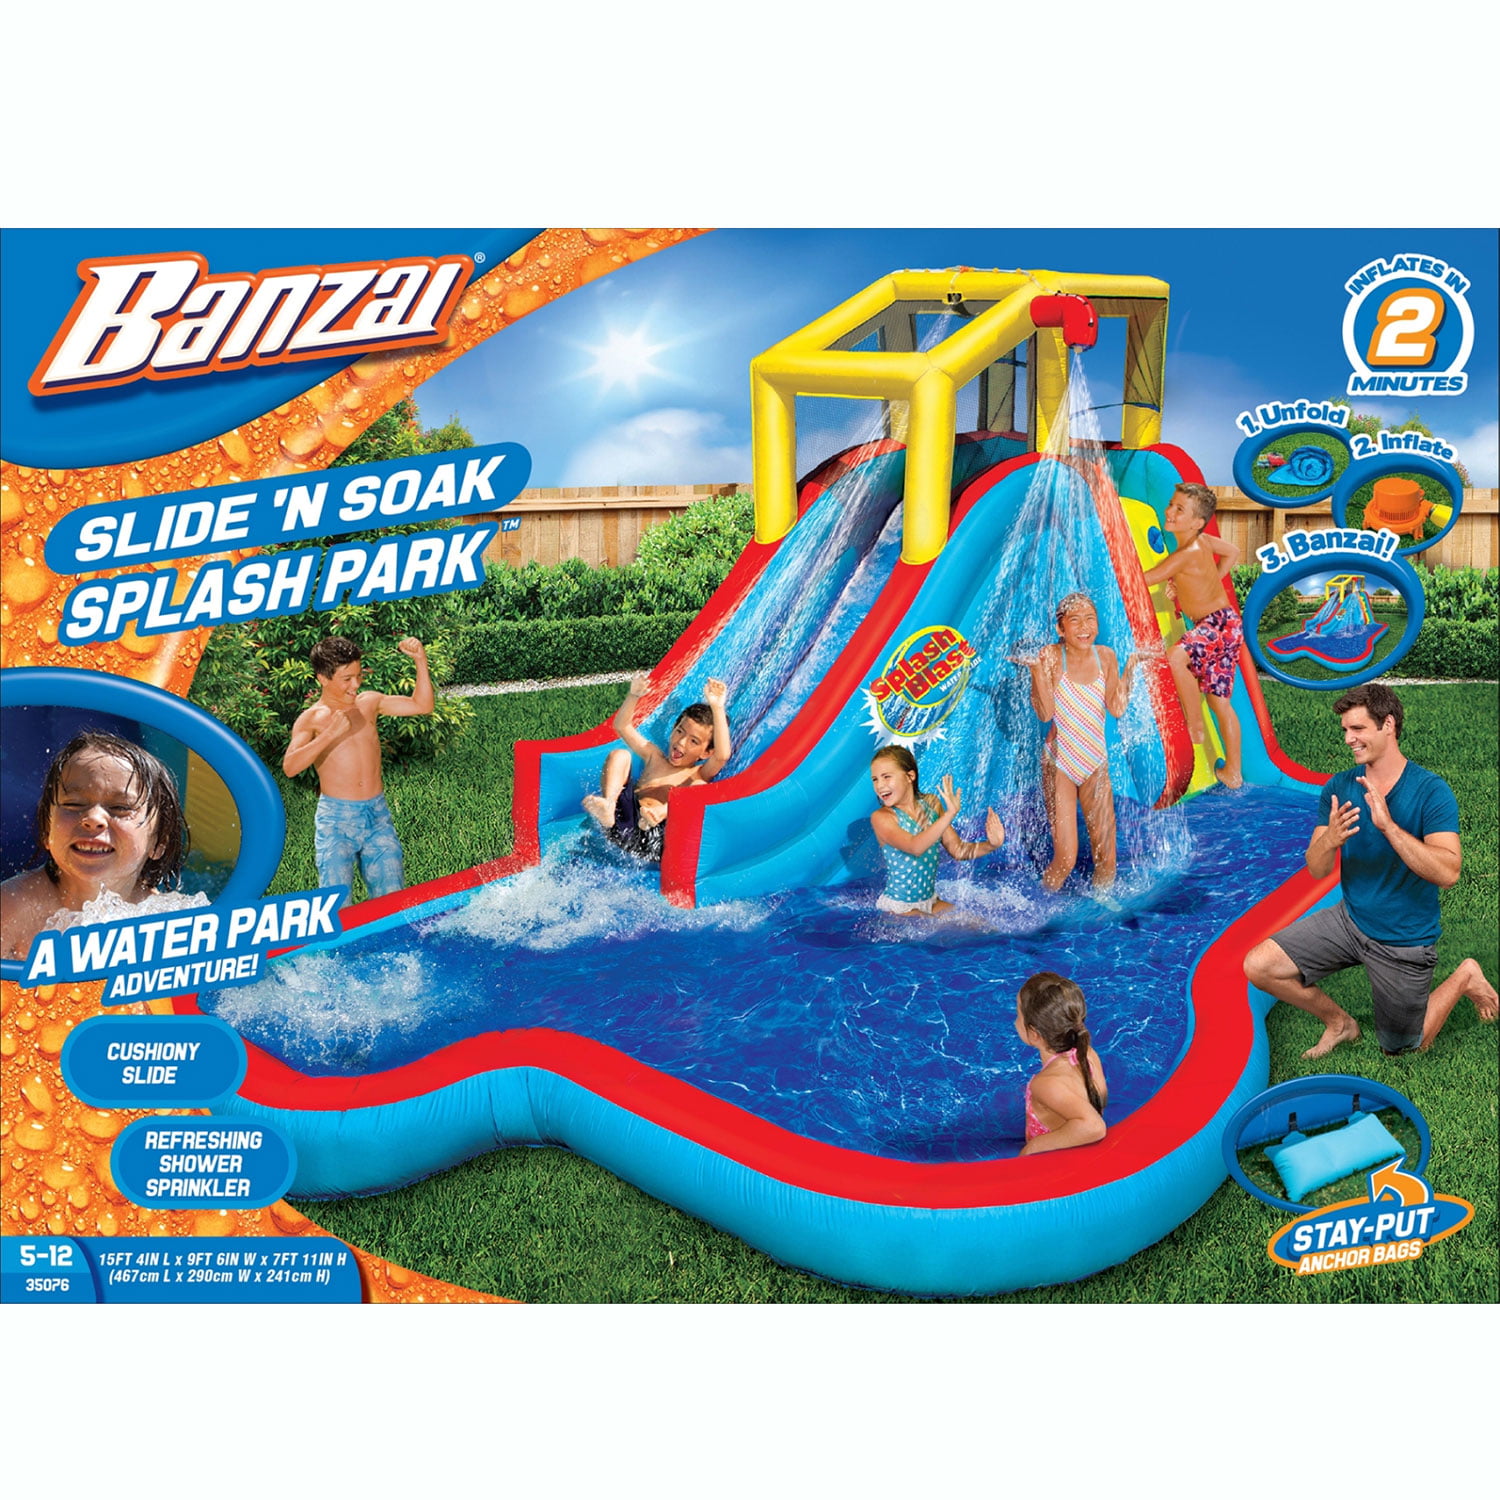 Banzai Soak N Splash 16Fft Children's Water Slide 